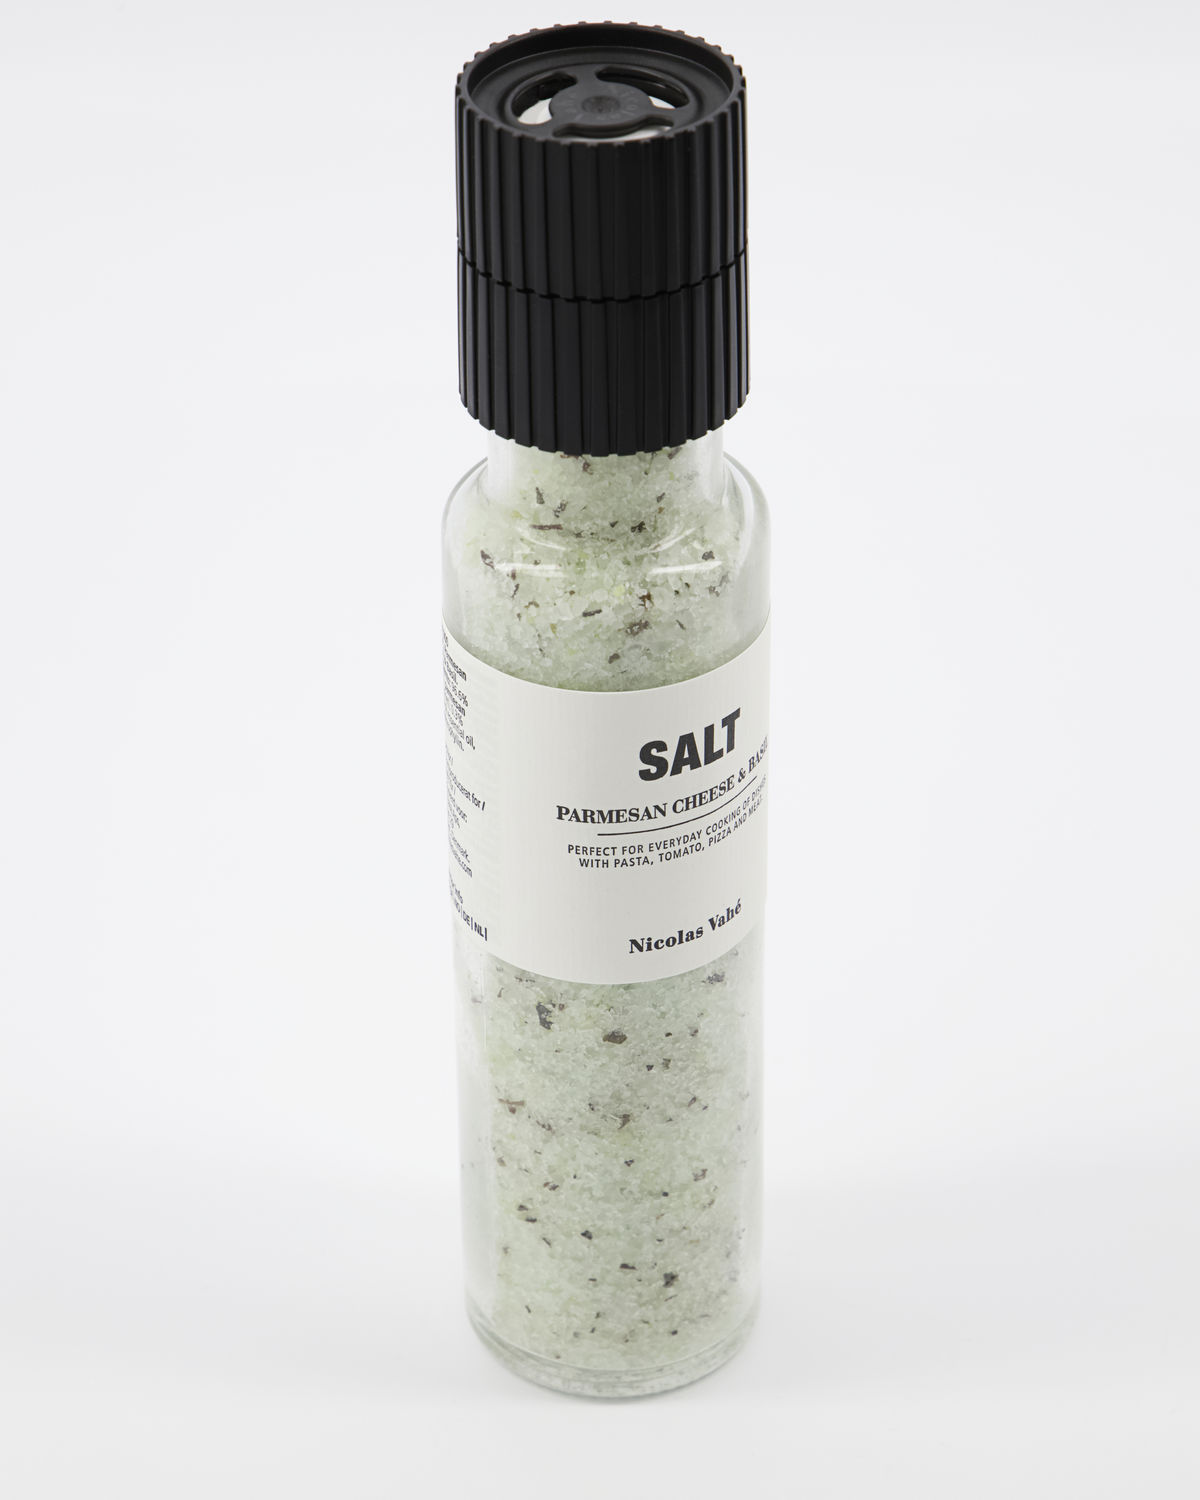 Salt, Parmesan Cheese & Basil, 320 g.